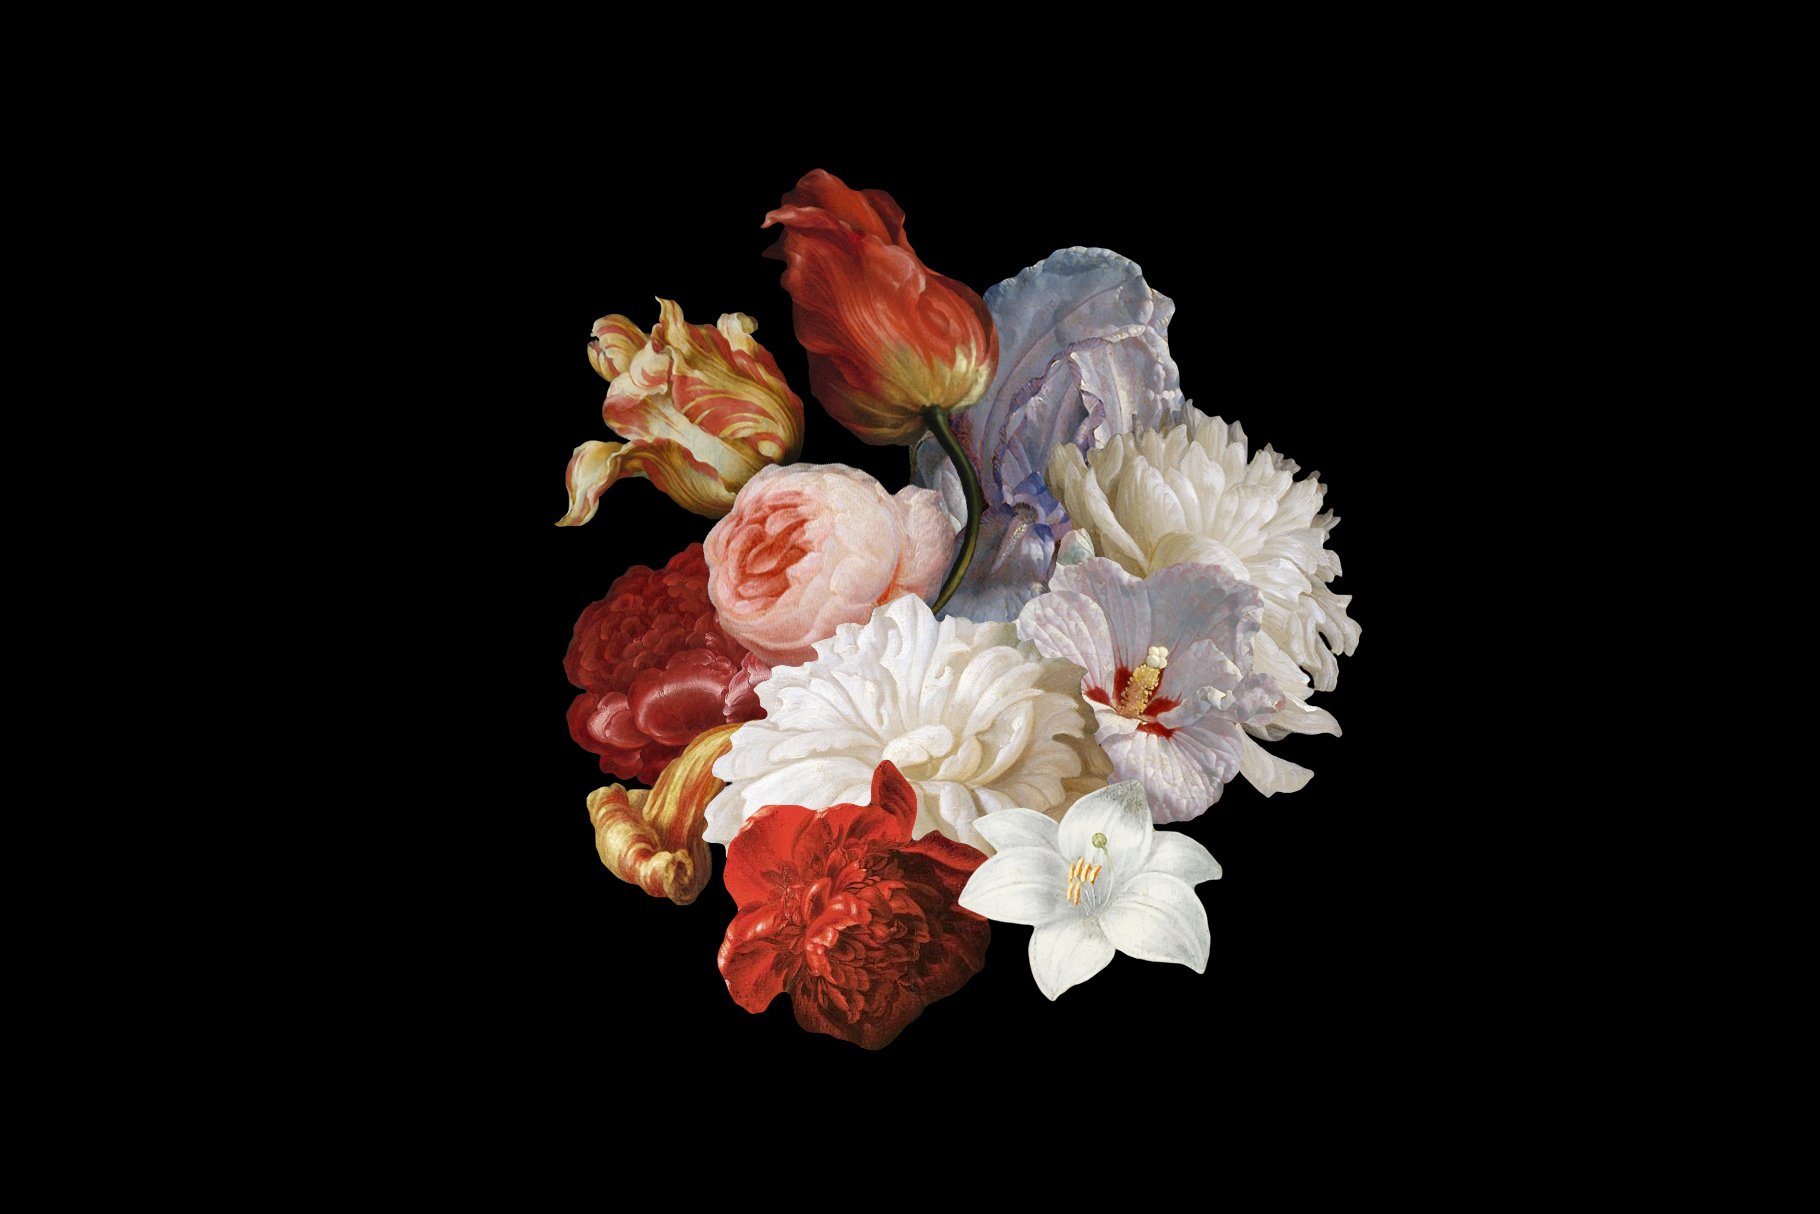 100多种复古花卉古典艺术品图像集合 Kurohana – Moody Florals Collection 图片素材 第7张